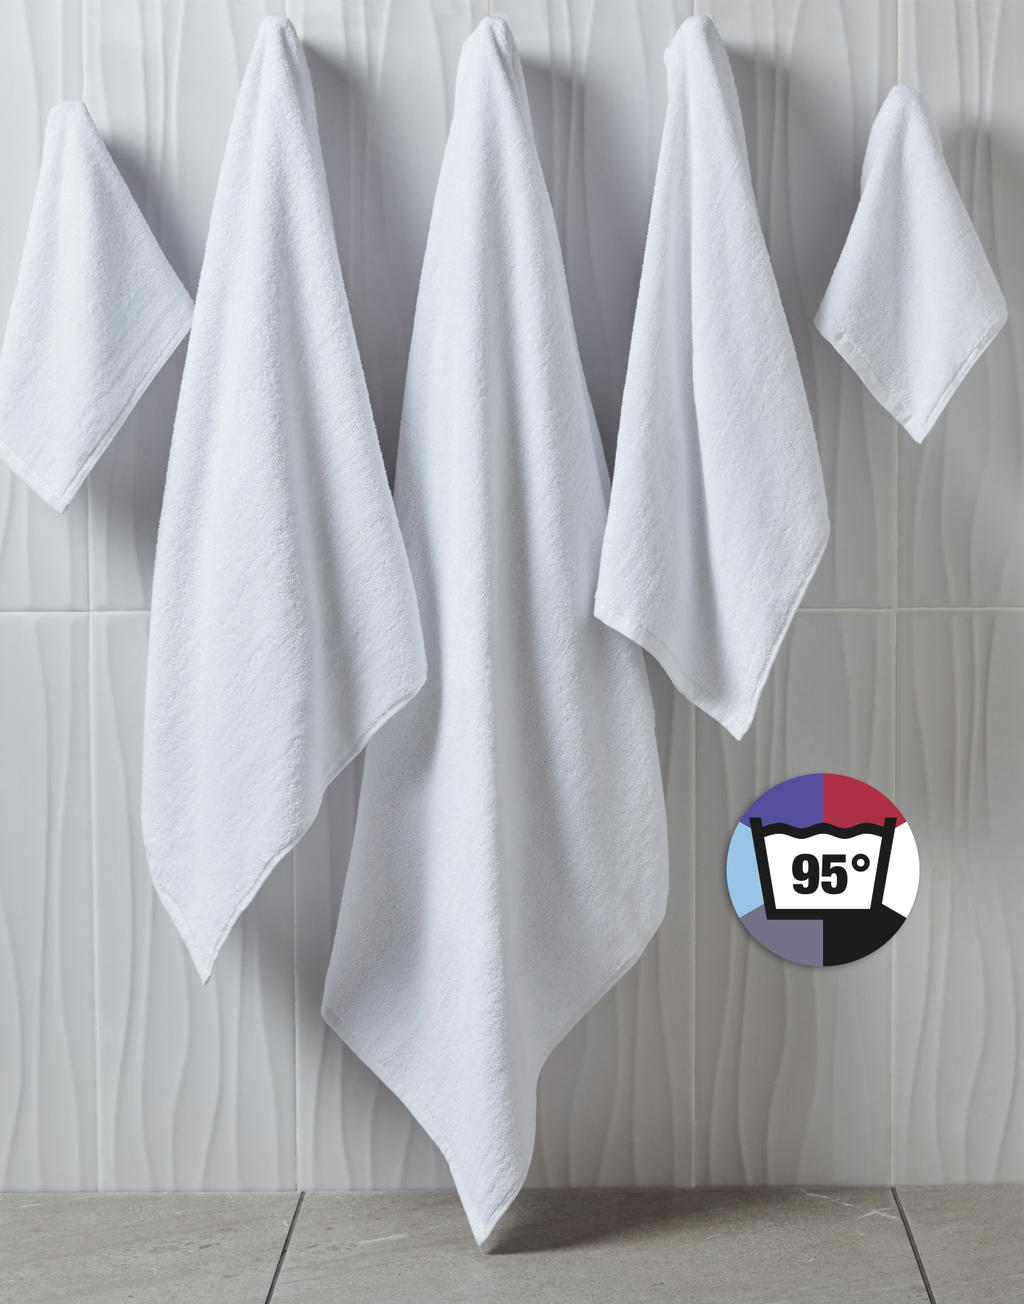  Ebro Hand Towel 50x100cm in Farbe Snowwhite